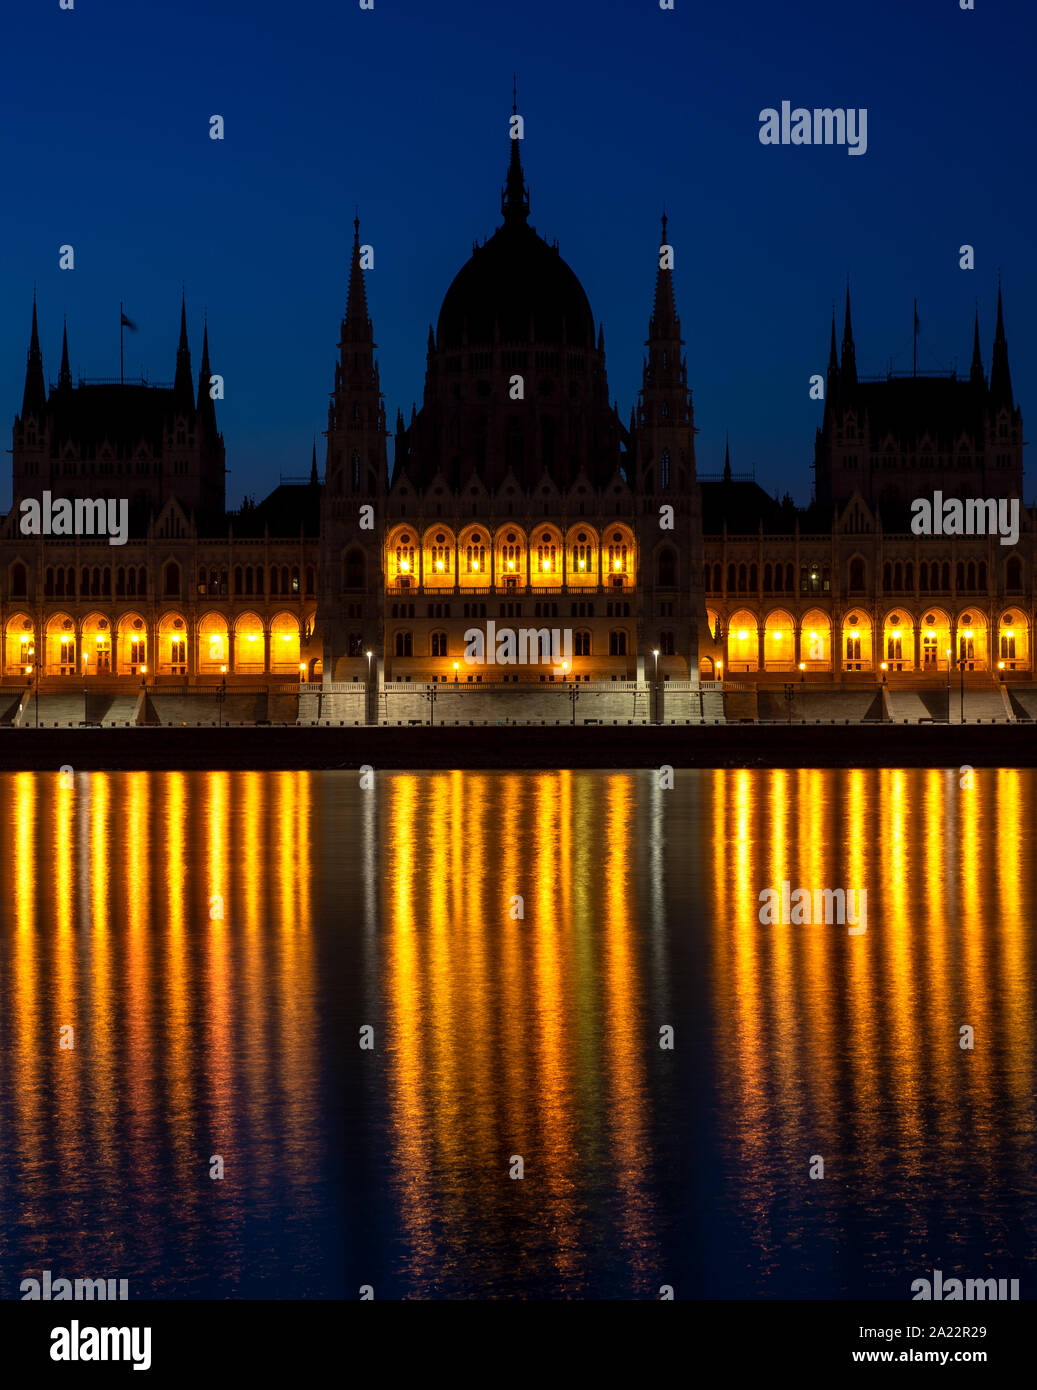 Parlament in Budapest, Ungarn. Berühmte Sehenswürdigkeiten, historische Gebäude. Blaue Stunde und Gelb leuchten, was in Donau wider. Stockfoto